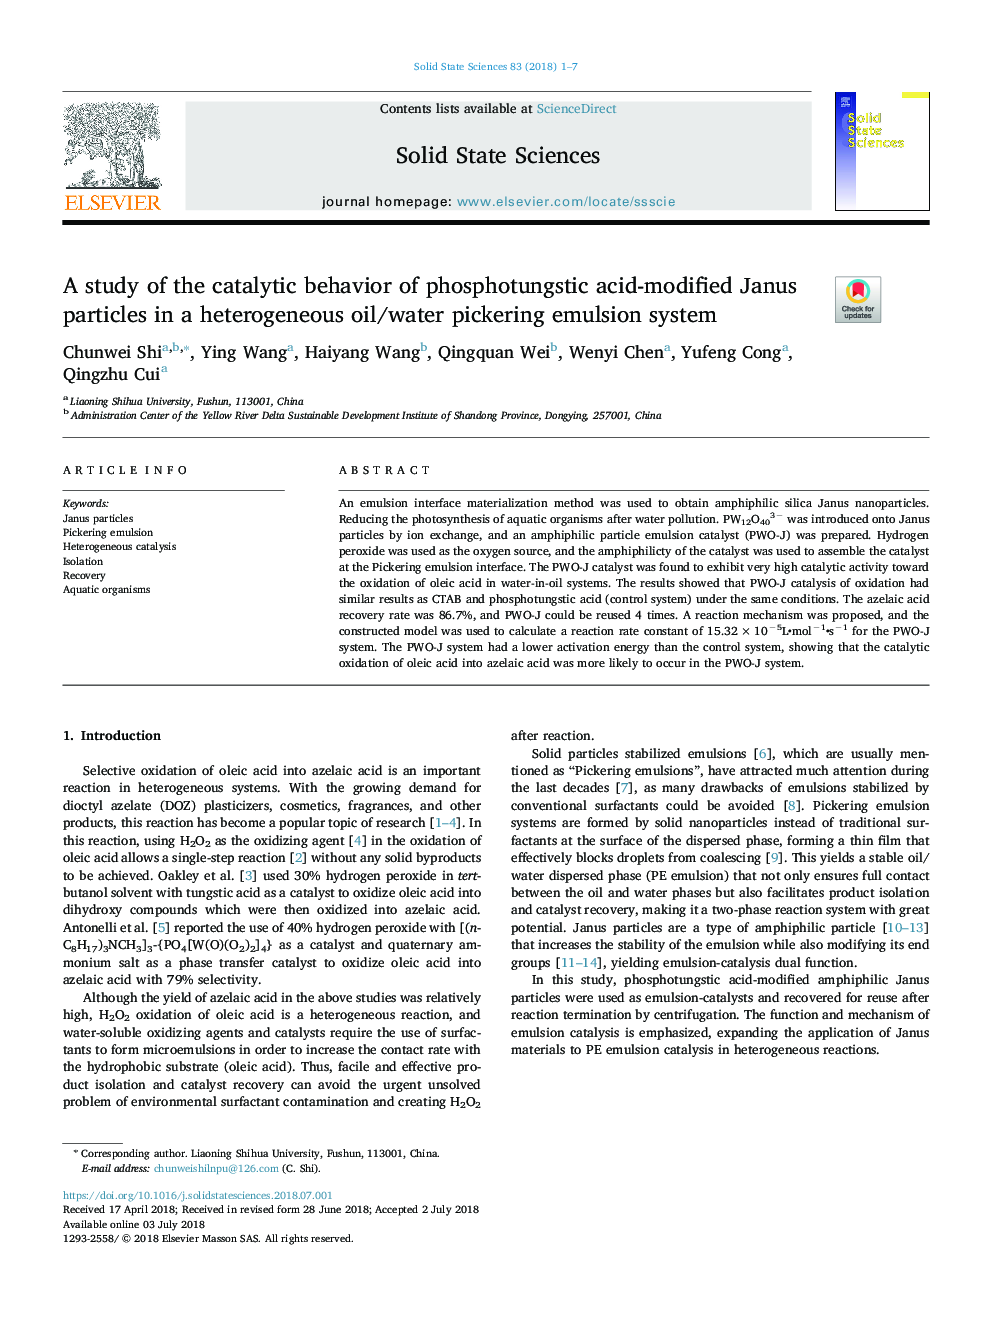 مطالعه رفتار کاتالیزوری ذرات یونی اصلاح شده با اسید فسفودوگرام در یک سیستم امولسیونی 